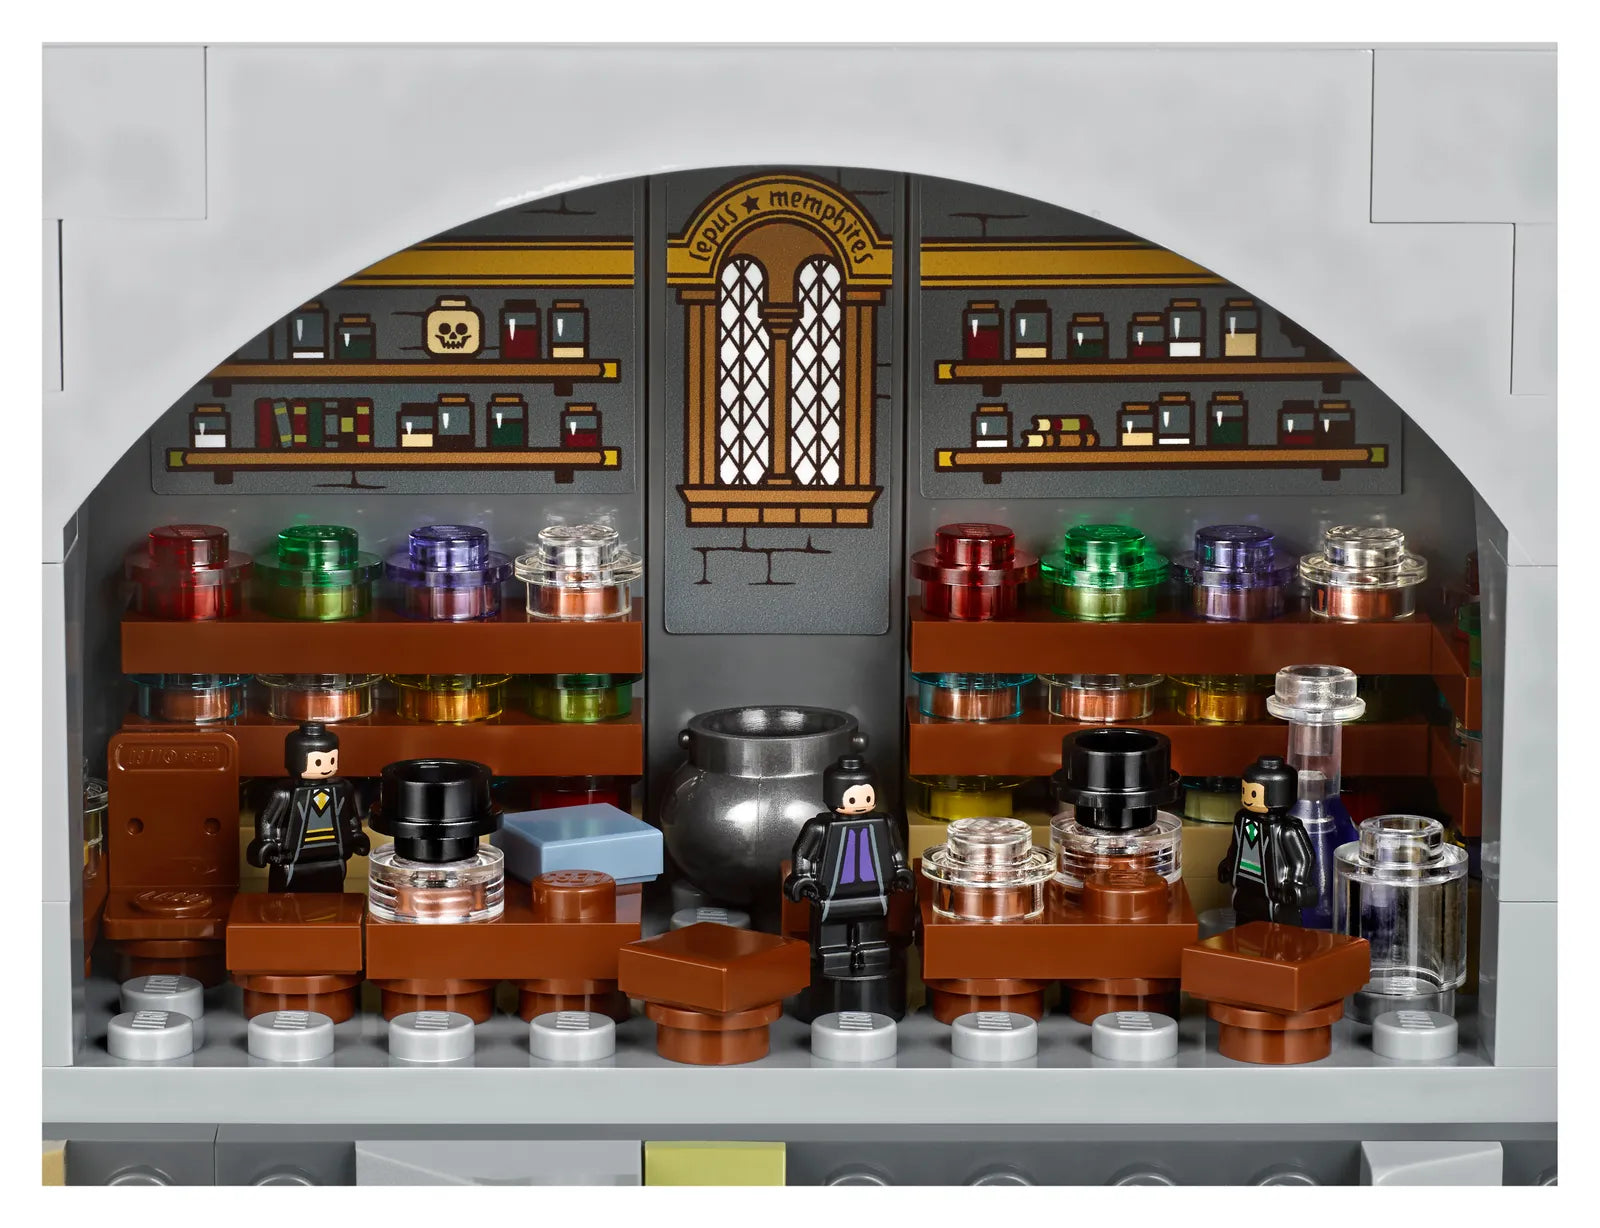 LEGO Harry Potter Castillo de Hogwarts 71043